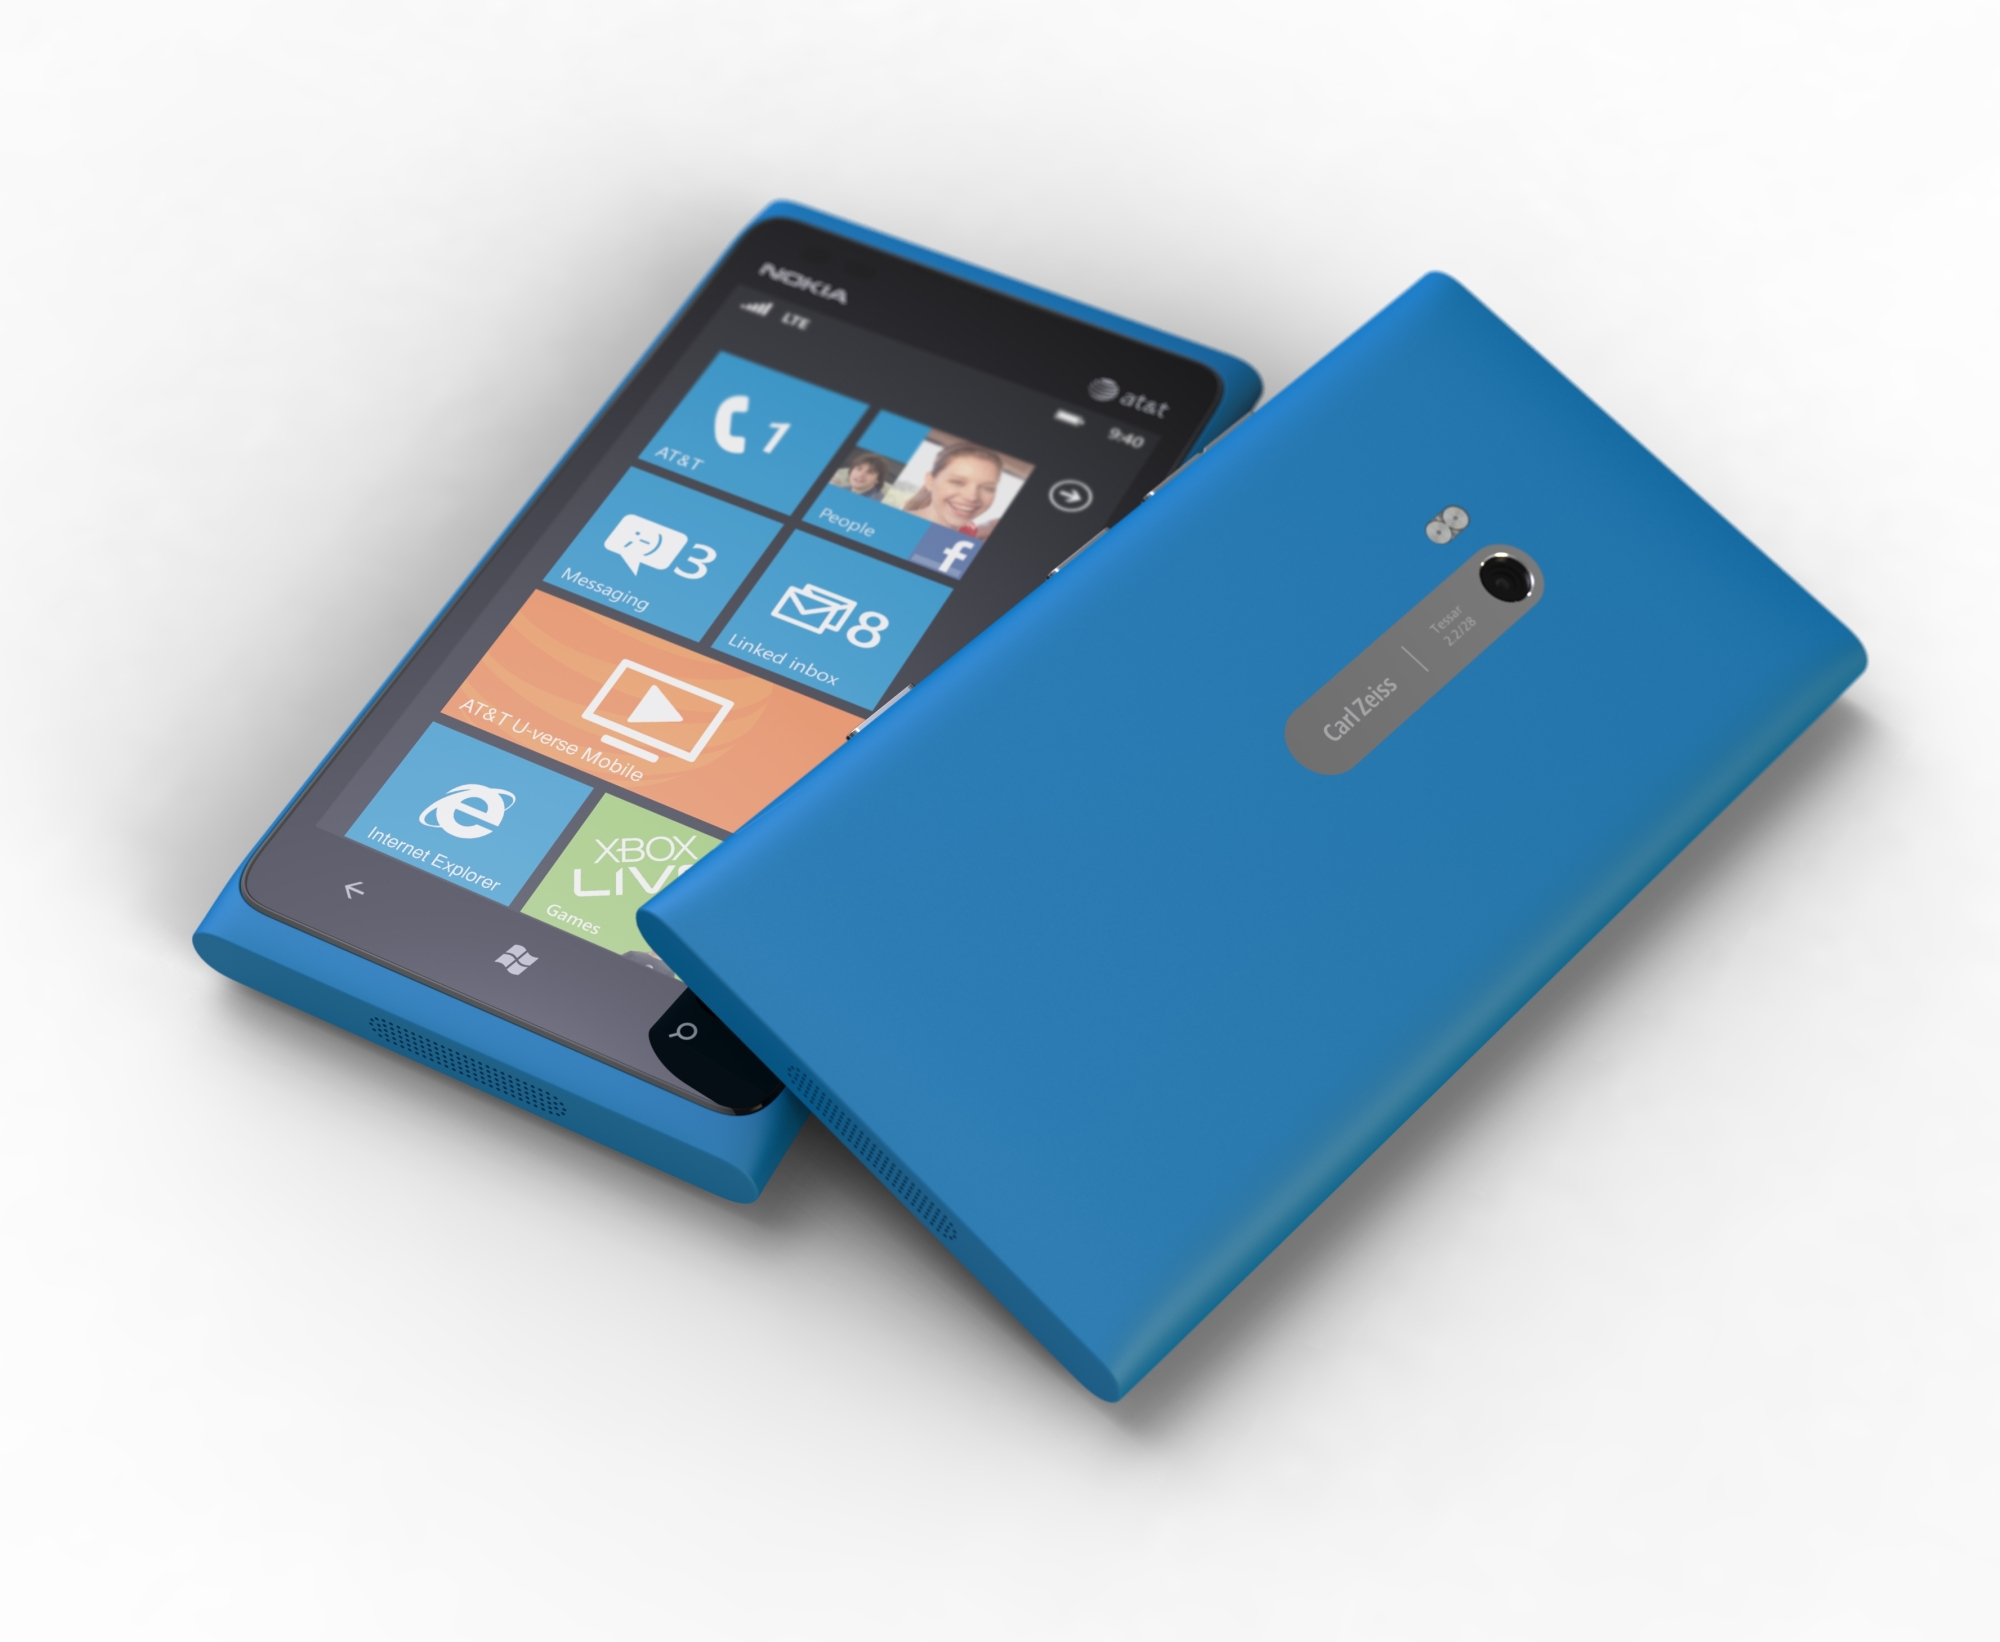 Bericht: Nokia Lumia 910 mit besserer Ausstattung für Europa | heise online